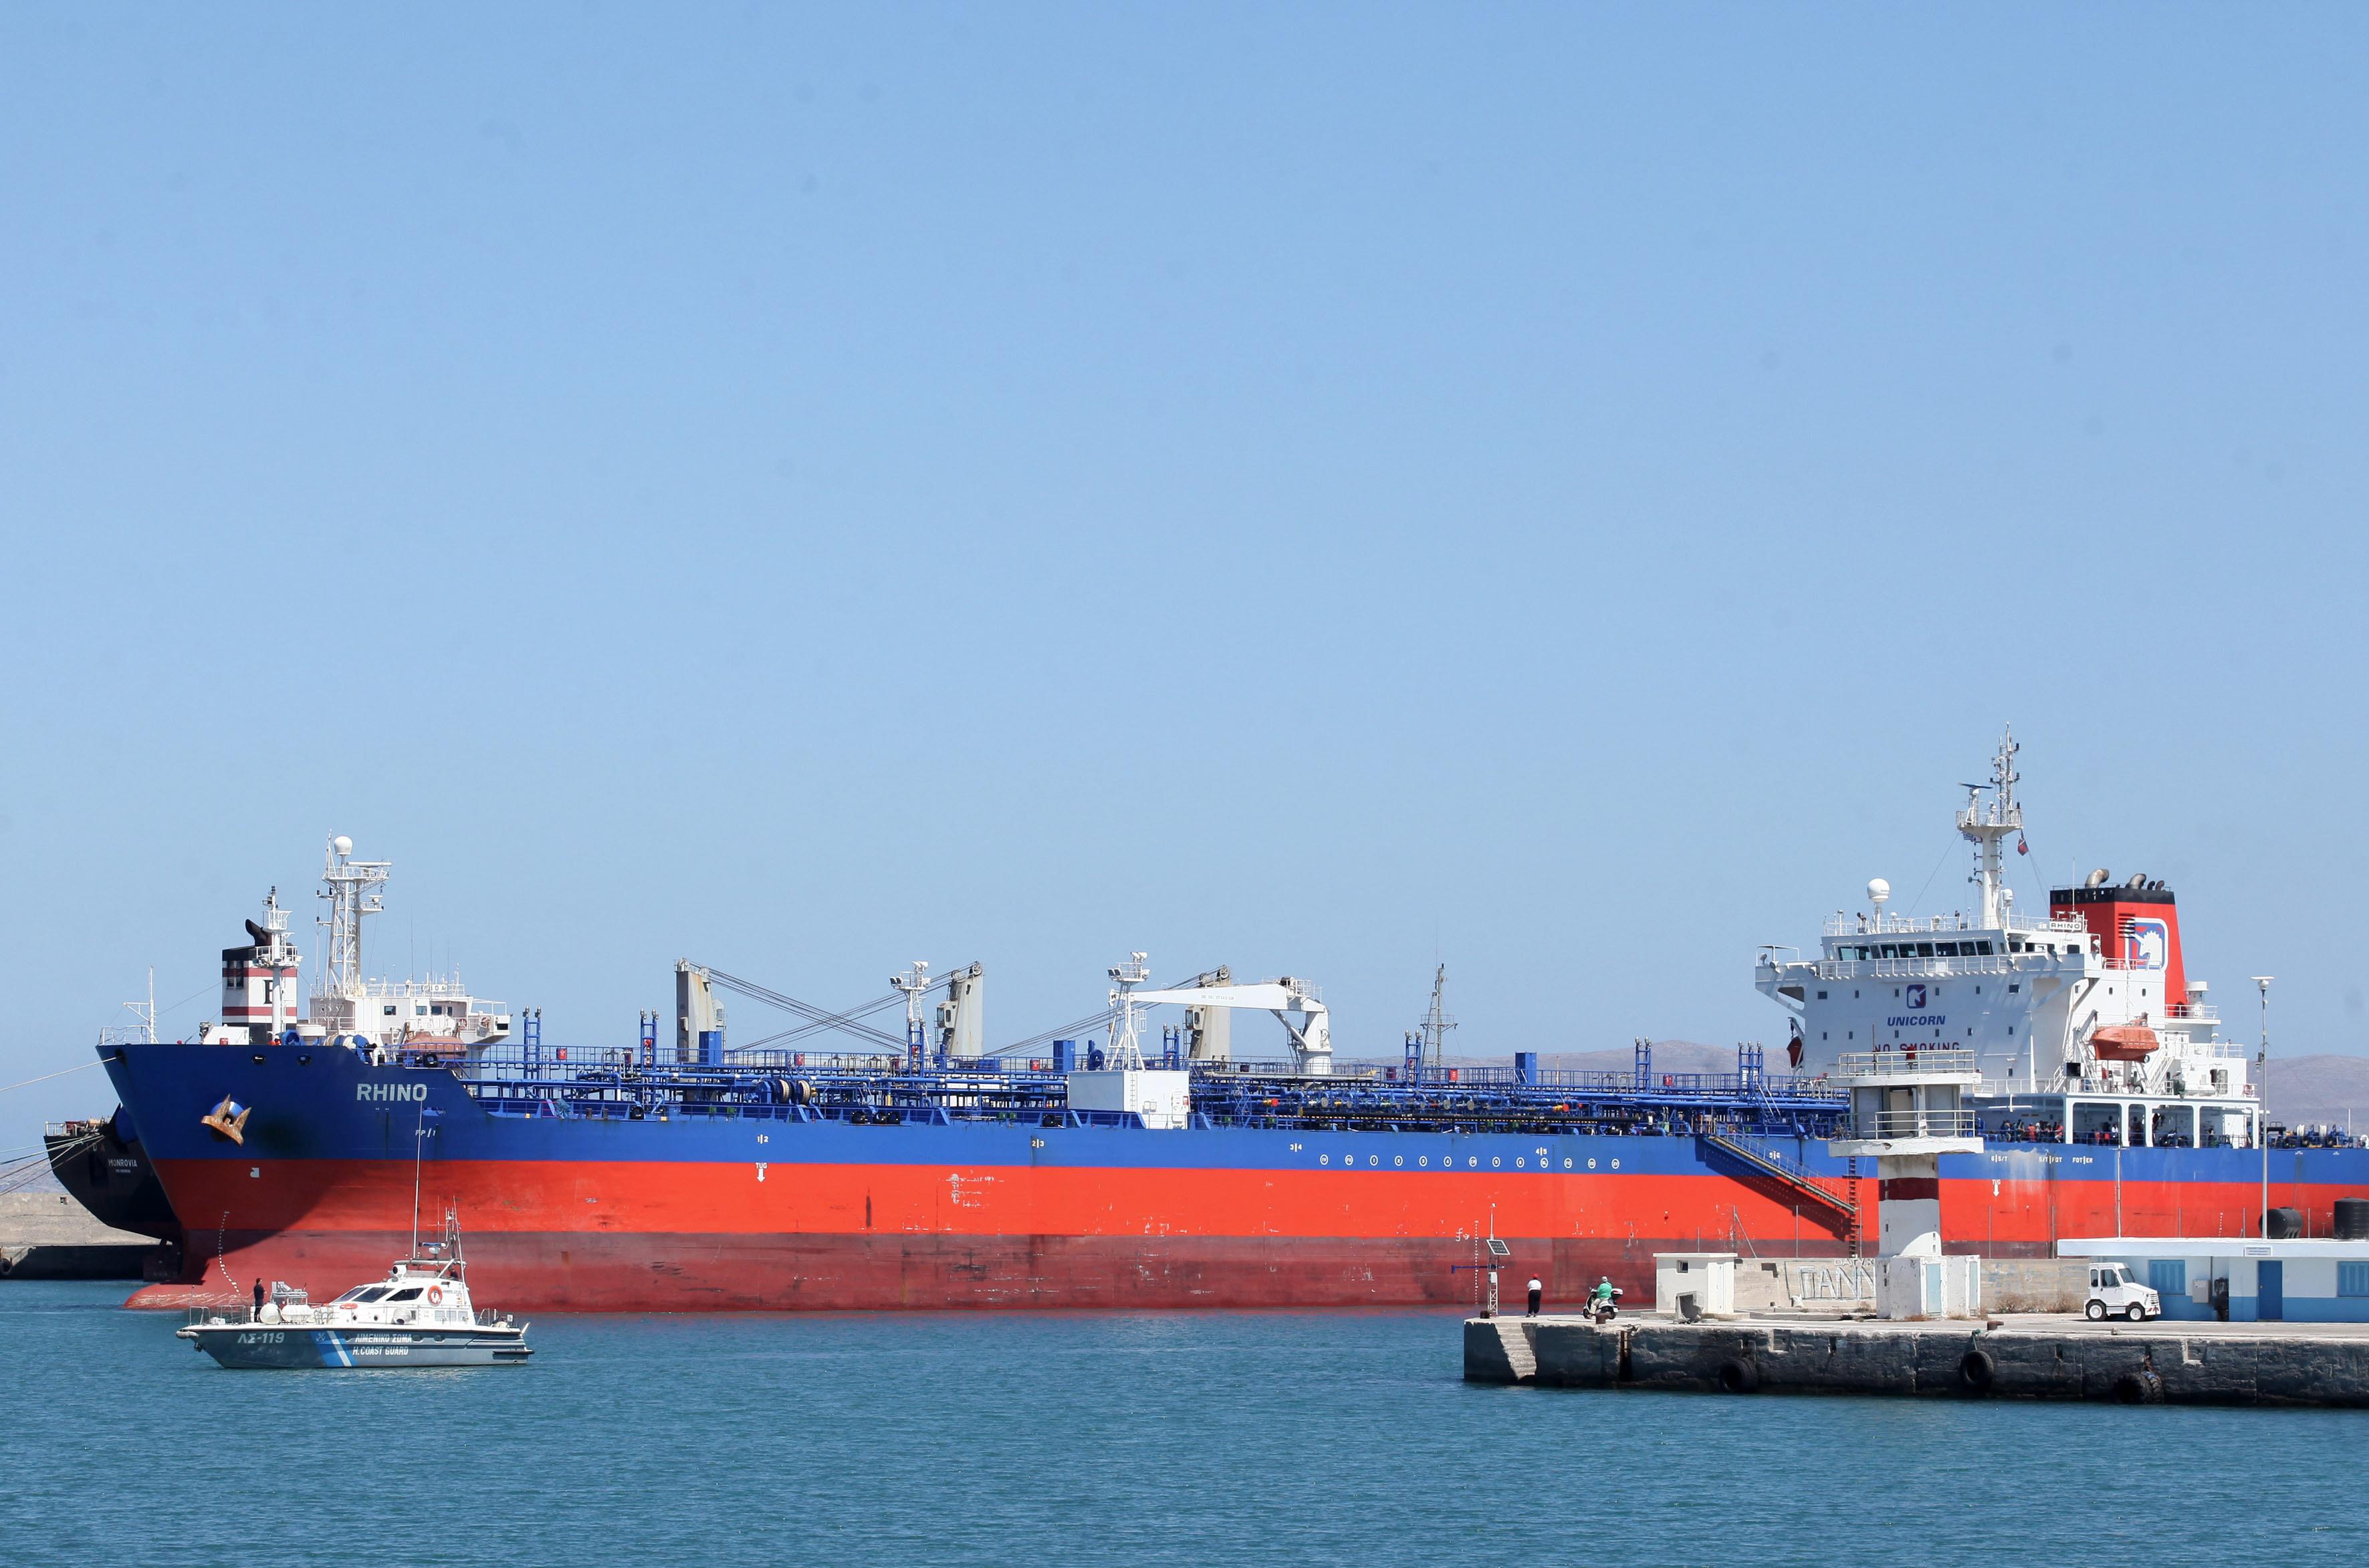 Βύθιση δεξαμενόπλοιου στον Σαρωνικό Κόλπο με άγνωστη ποσότητα καυσίμων